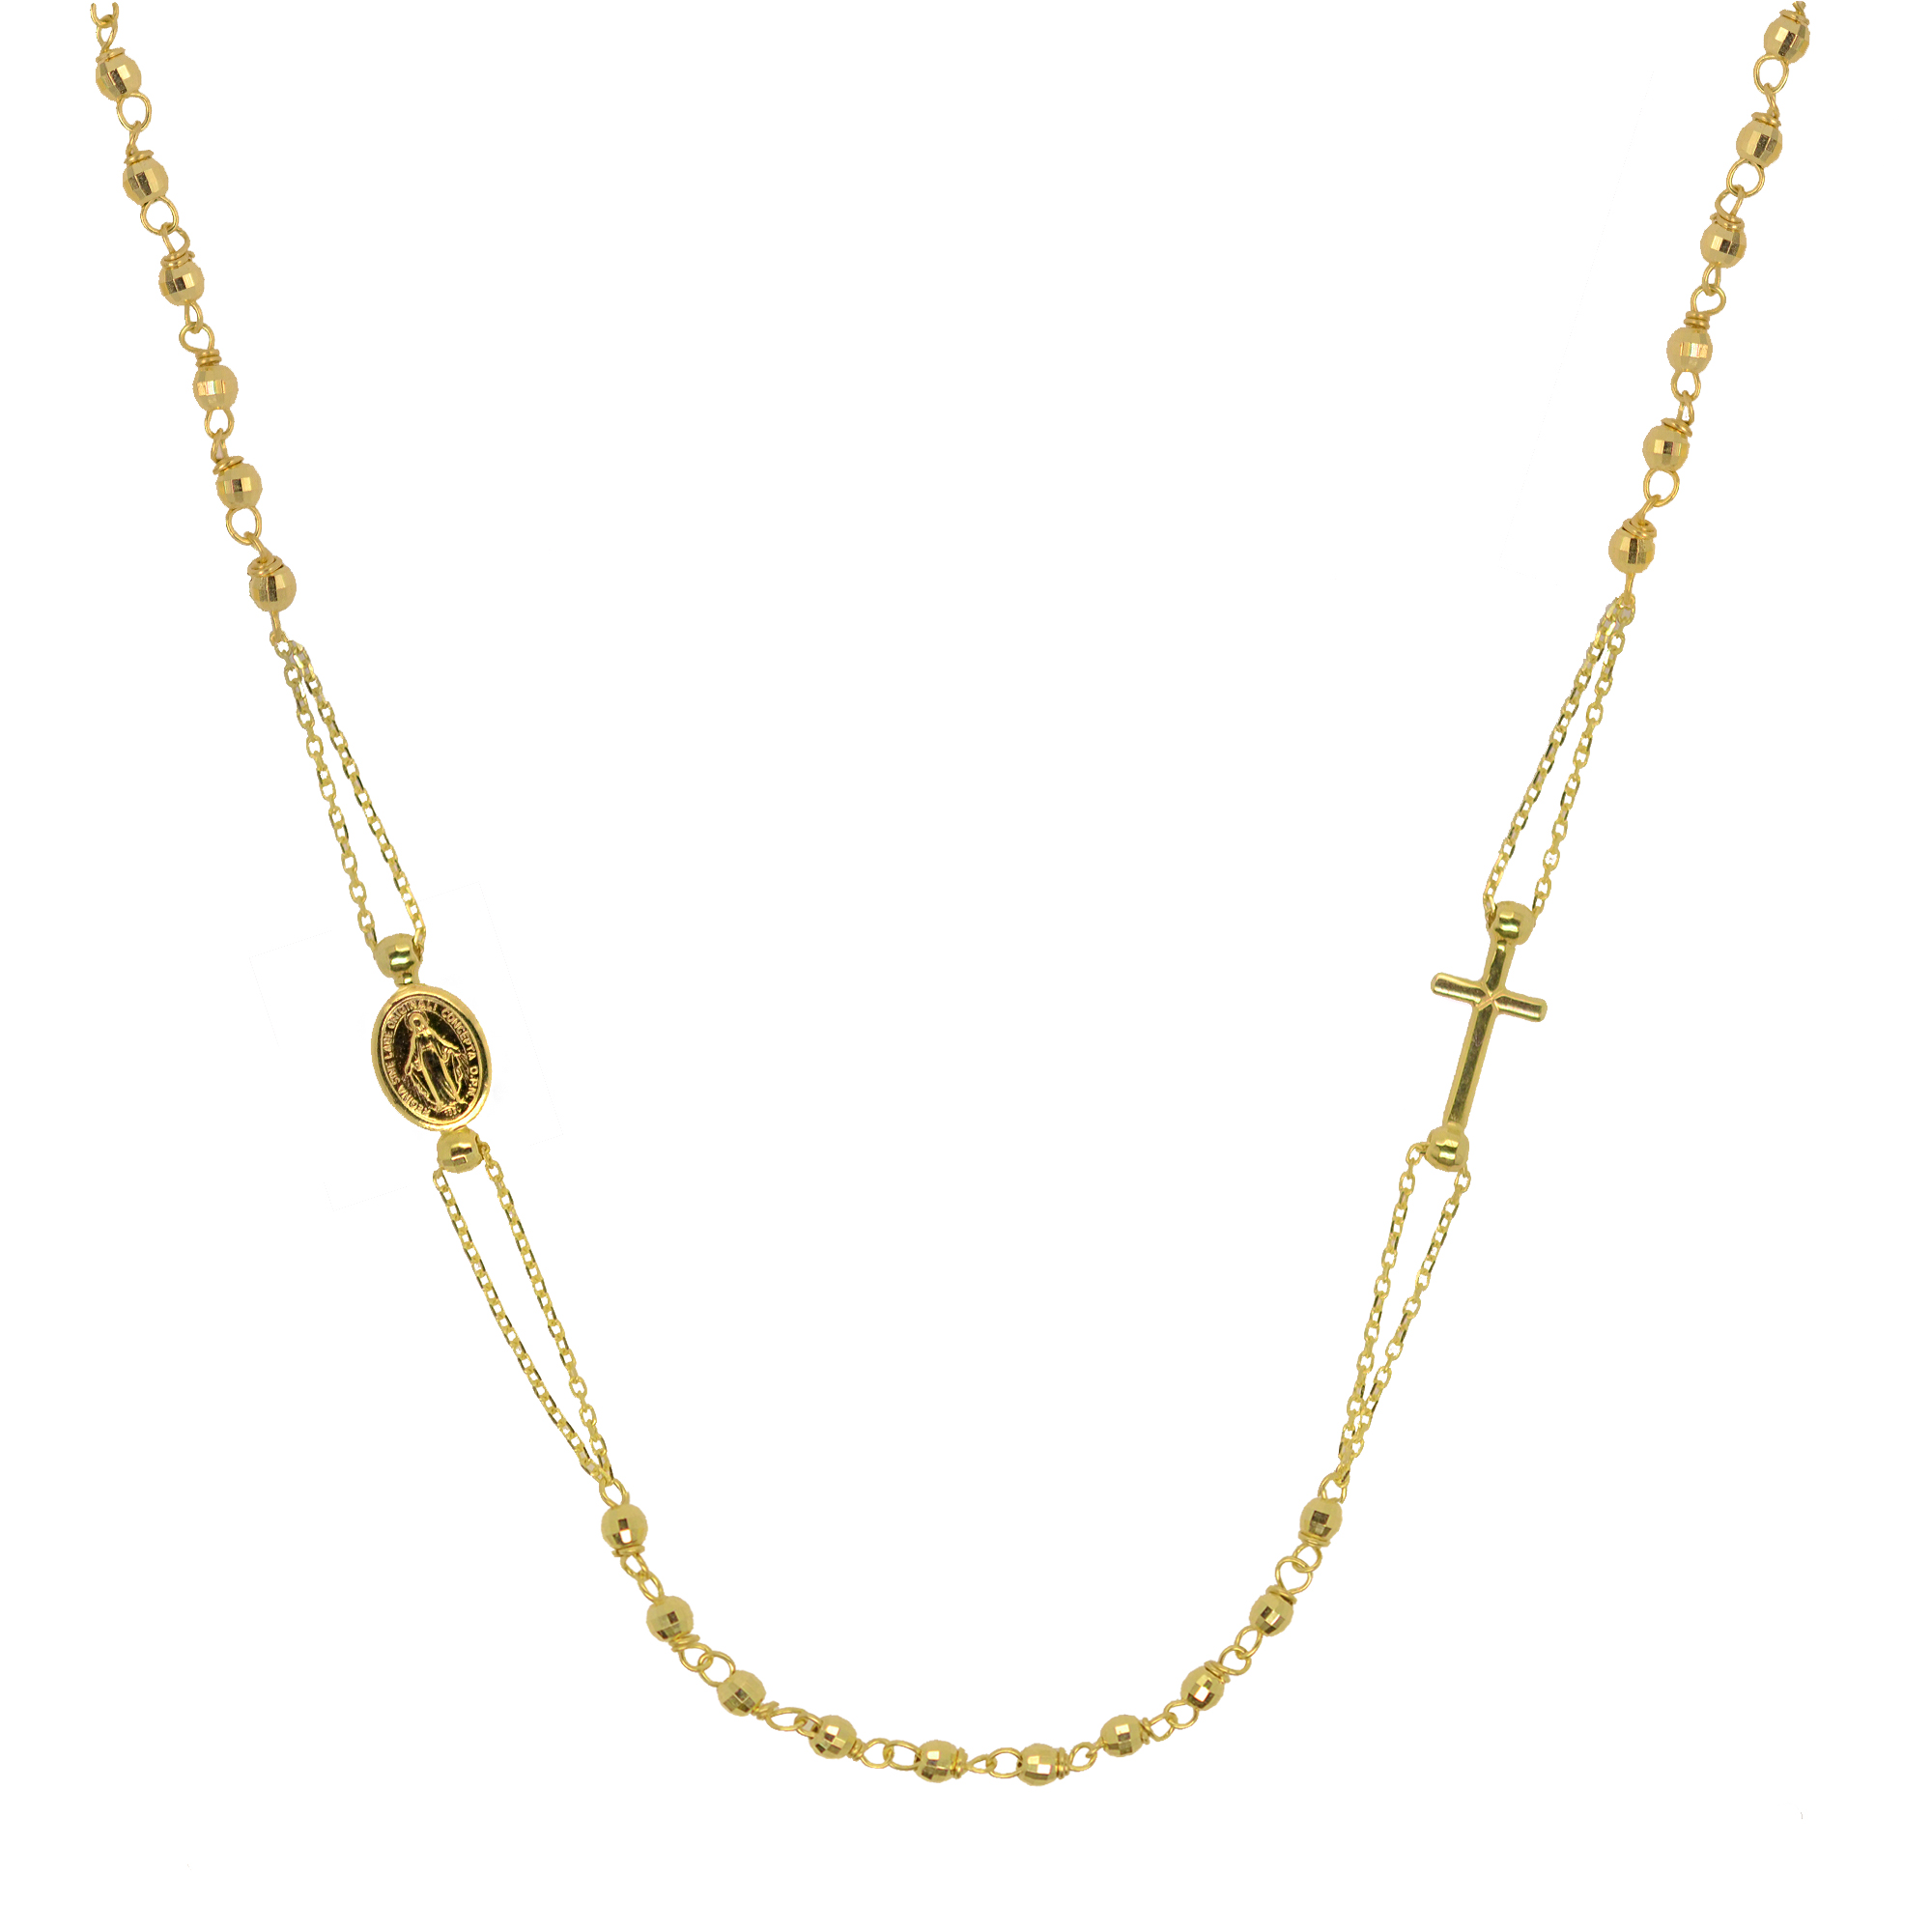 Evolution Group Zlatý 14 karátový náhrdelník růženec s křížem a medailonkem s Pannou Marií RŽ15 zlatý